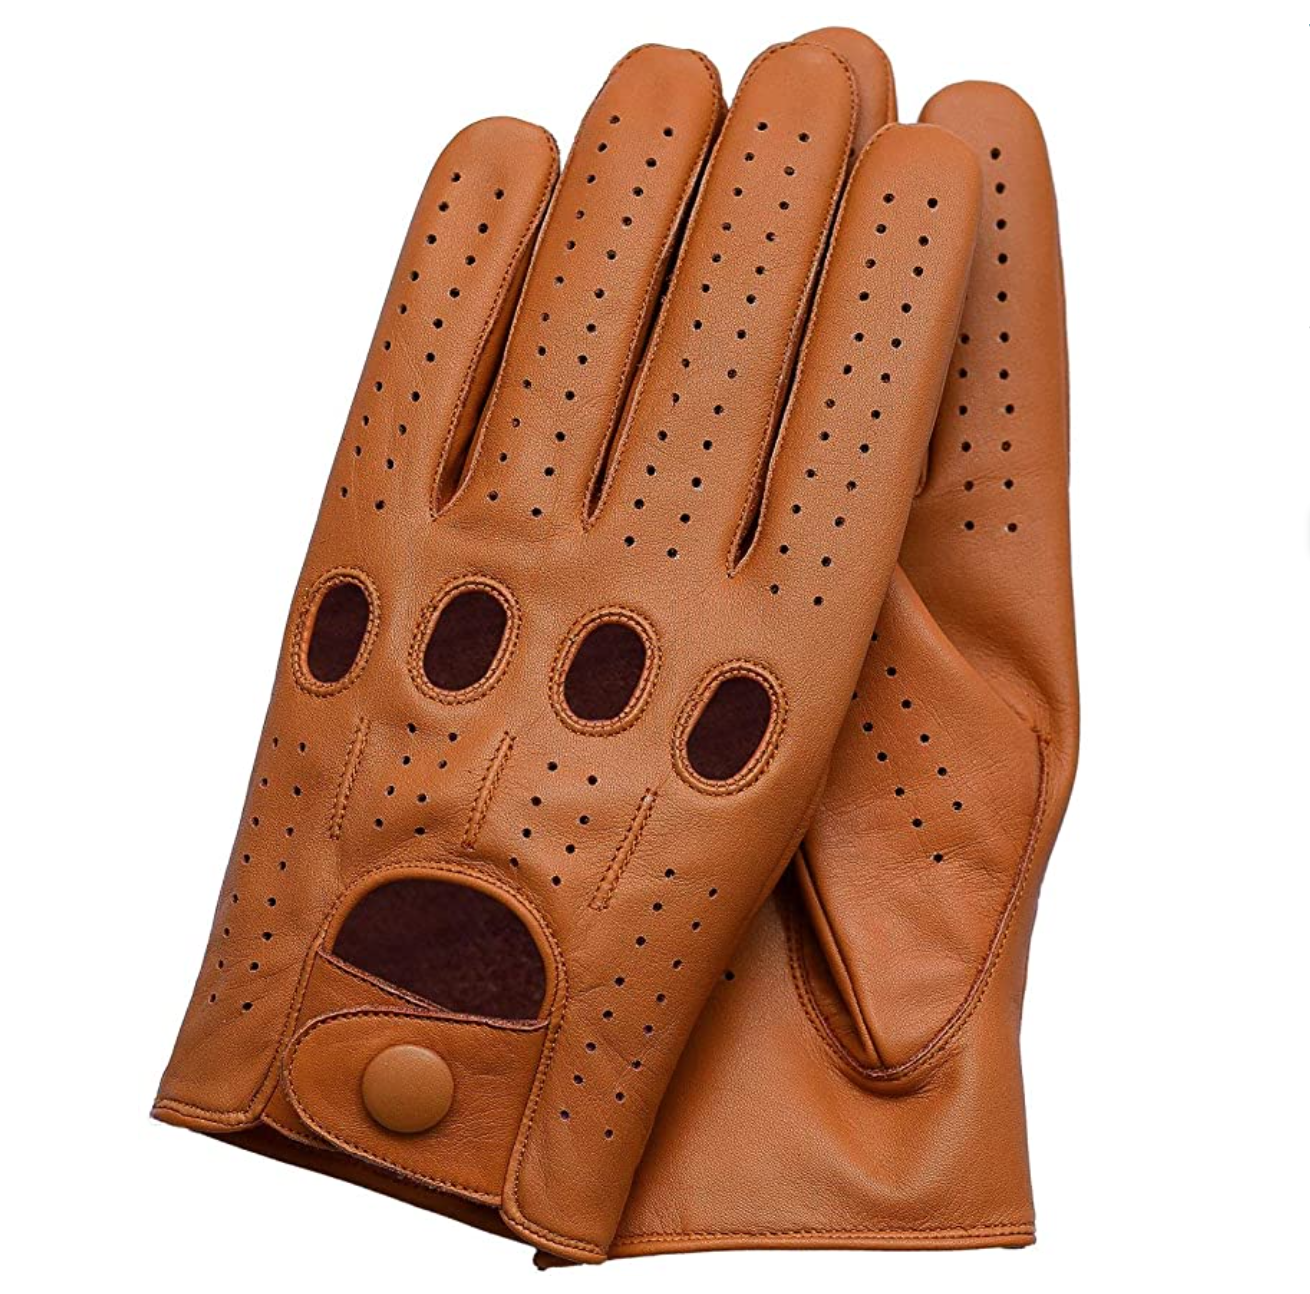 Мужские перчатки для вождения. Перчатки кожаные Genuine Leather. Genuine Leather HYNB перчатки кожаные мужские. Водительские перчатки. Перчатки для вождения.